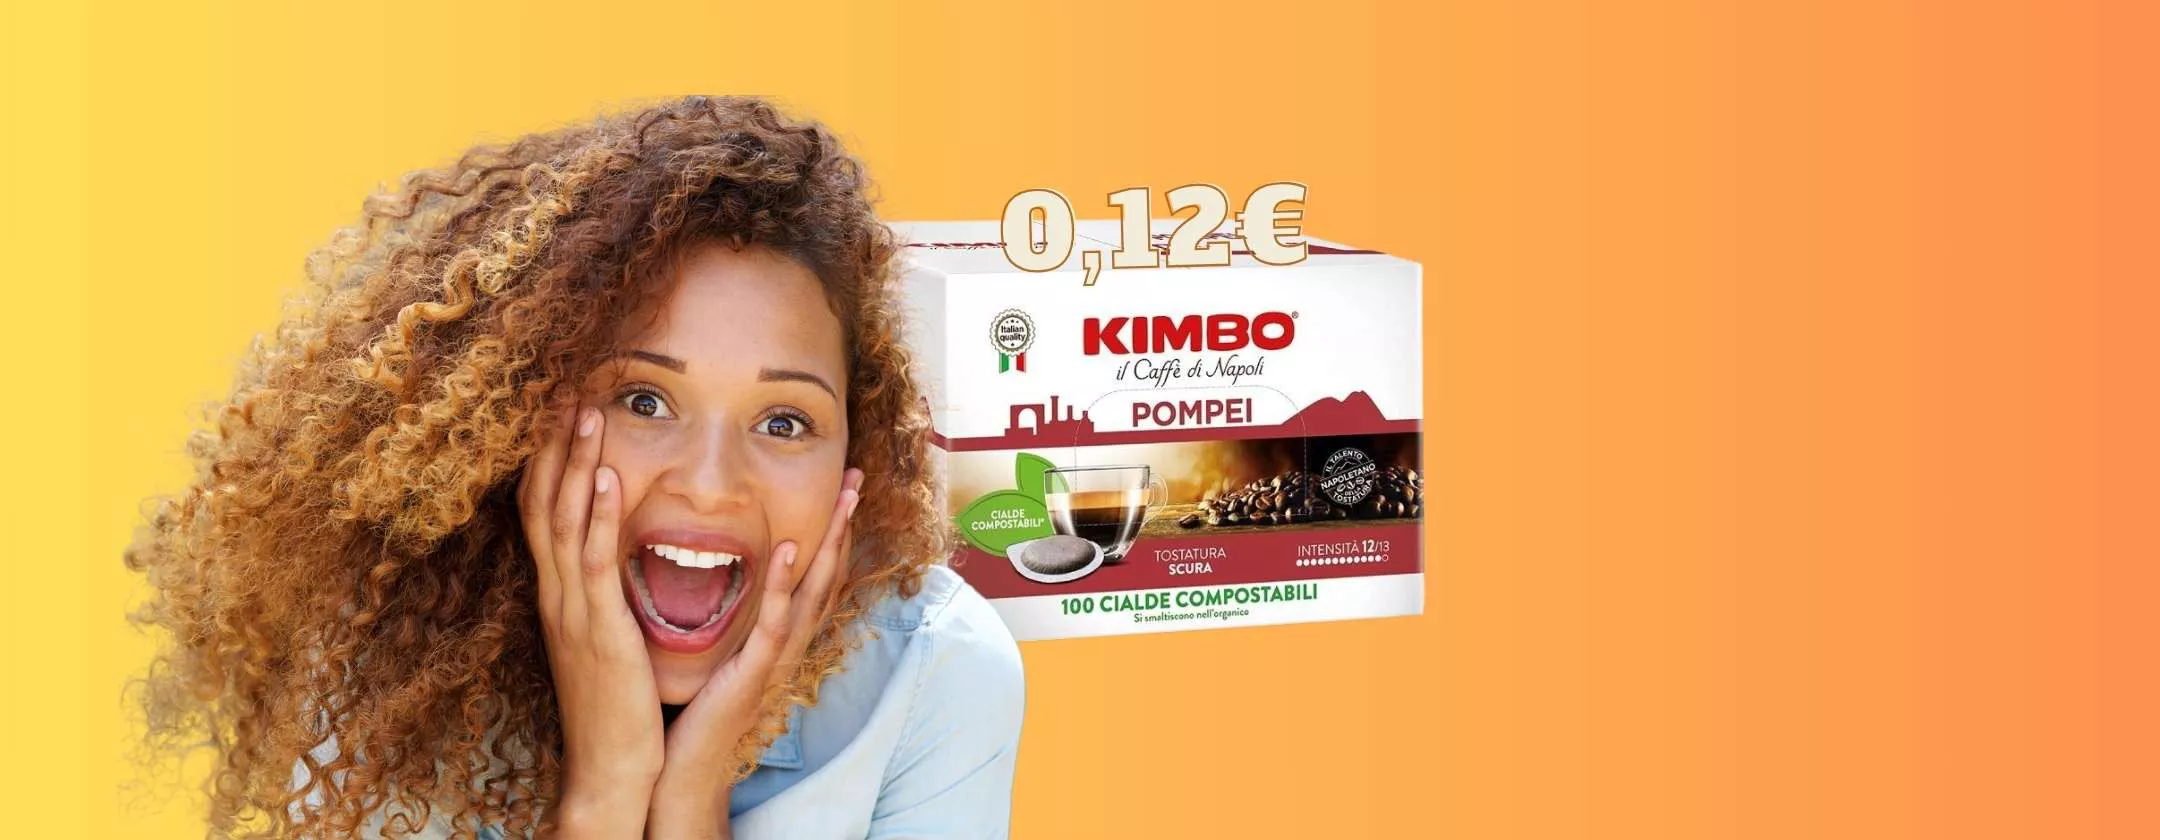 Cialde Caffè Kimbo qualità premium a soli 0,12 cent l'una su